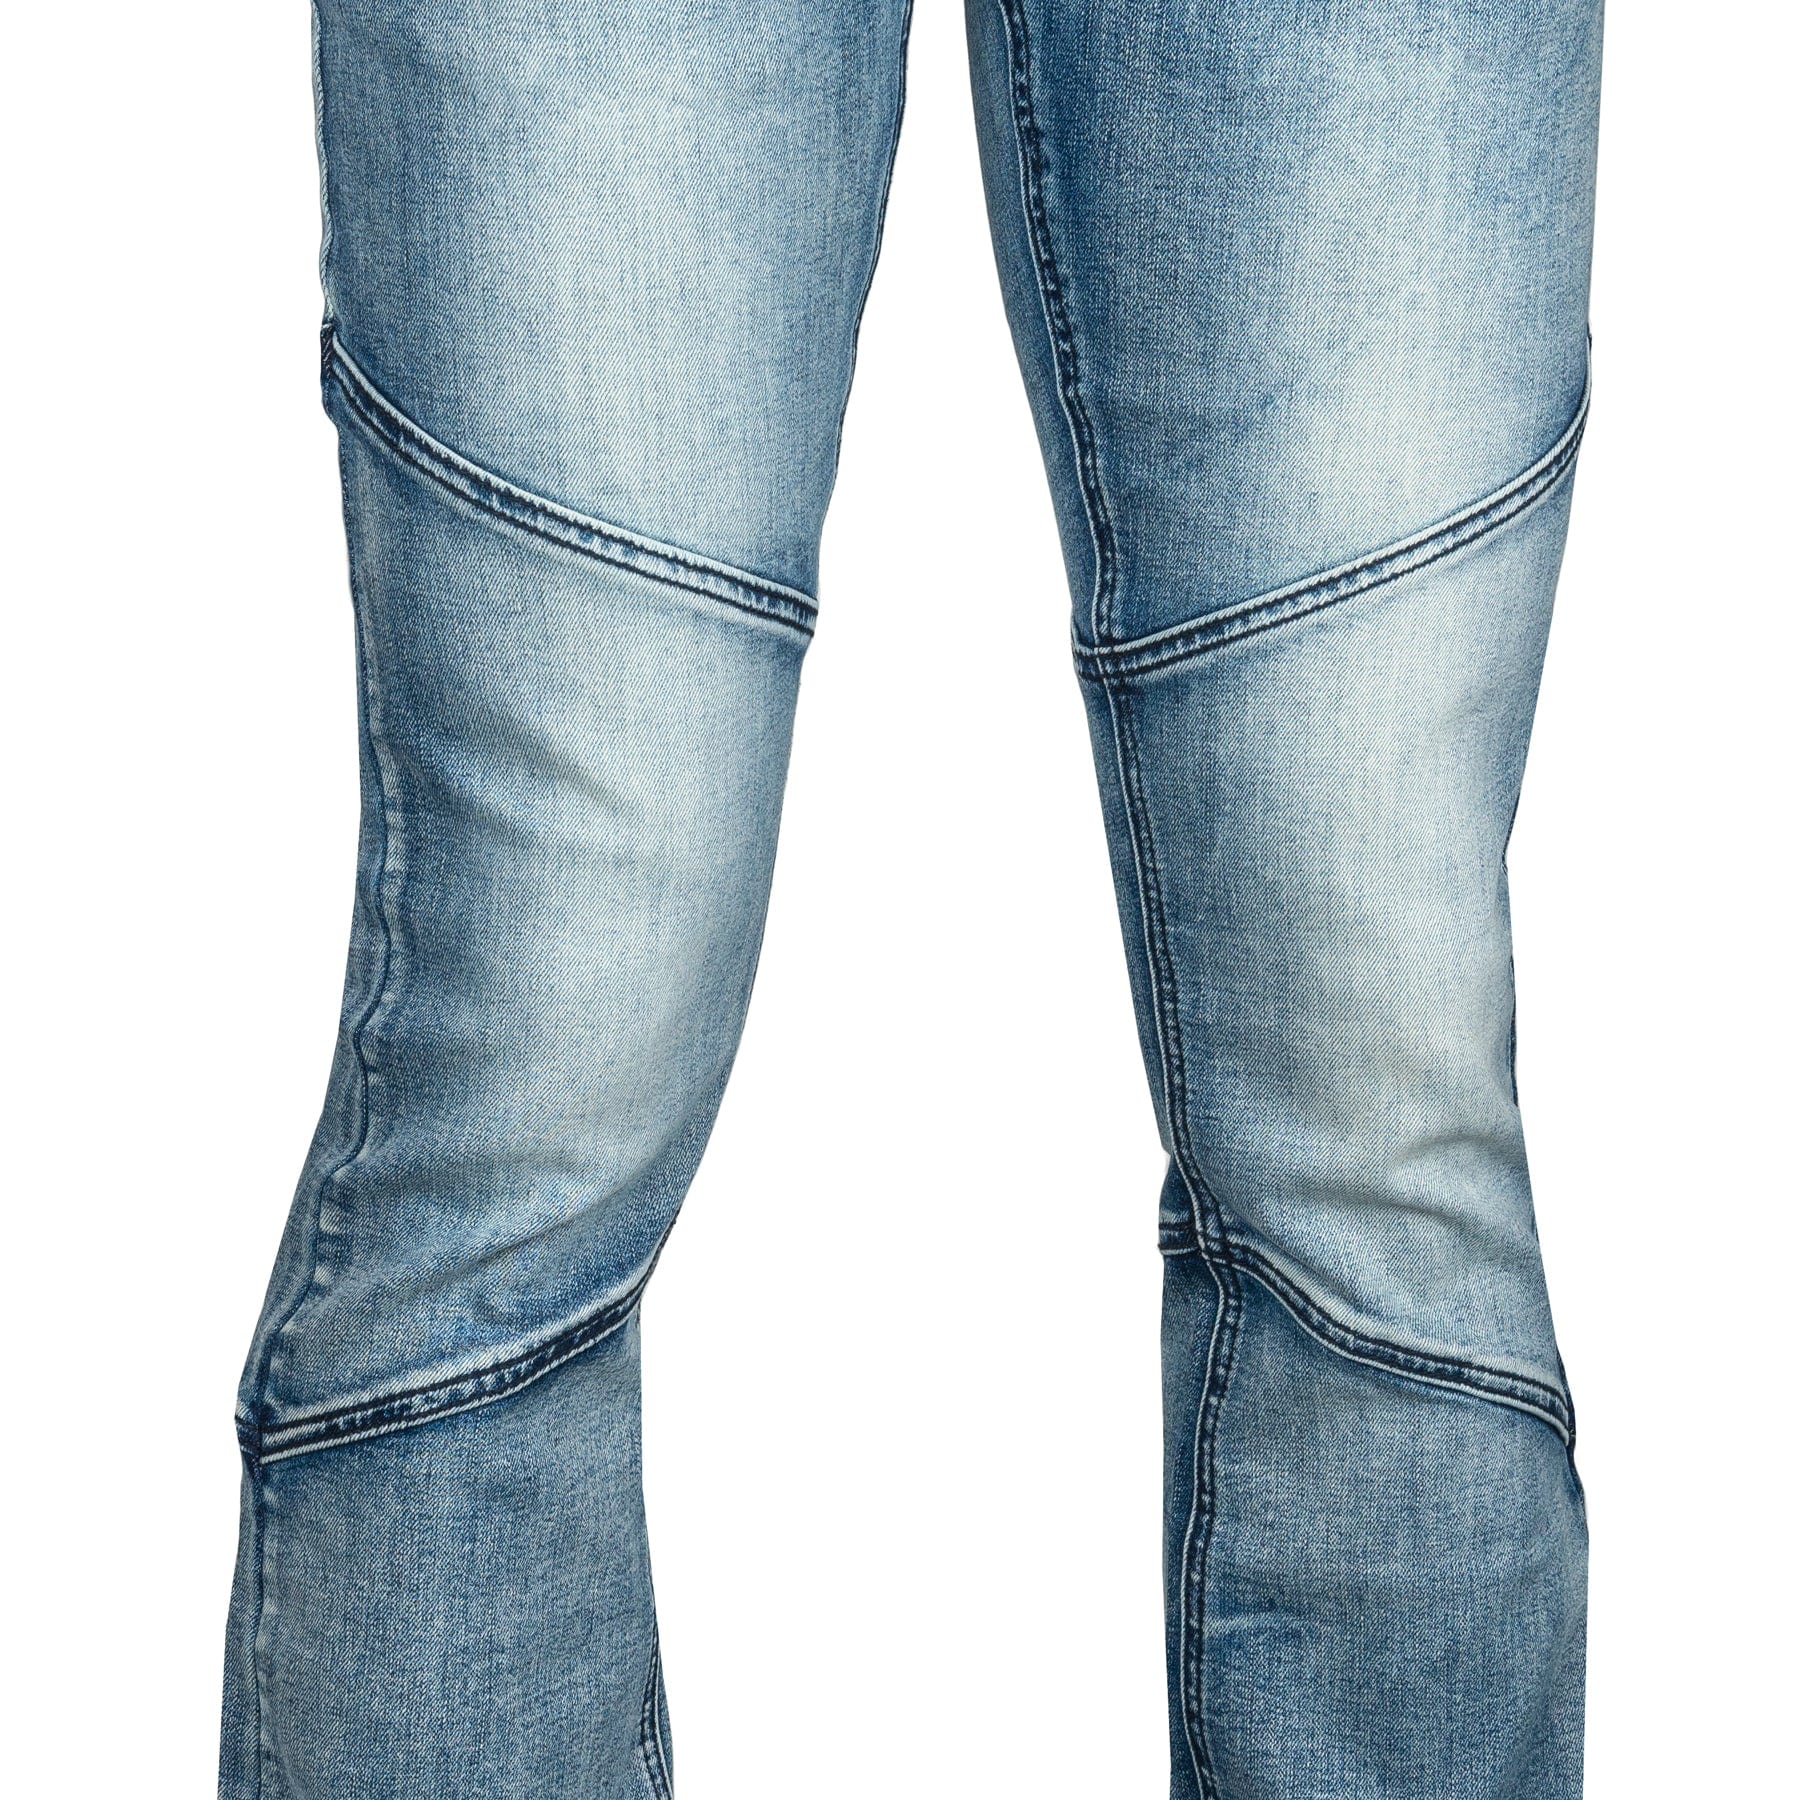 Wornstar Clothing Mens Jeans. Troubadour Denim Jeans - Classic Blue